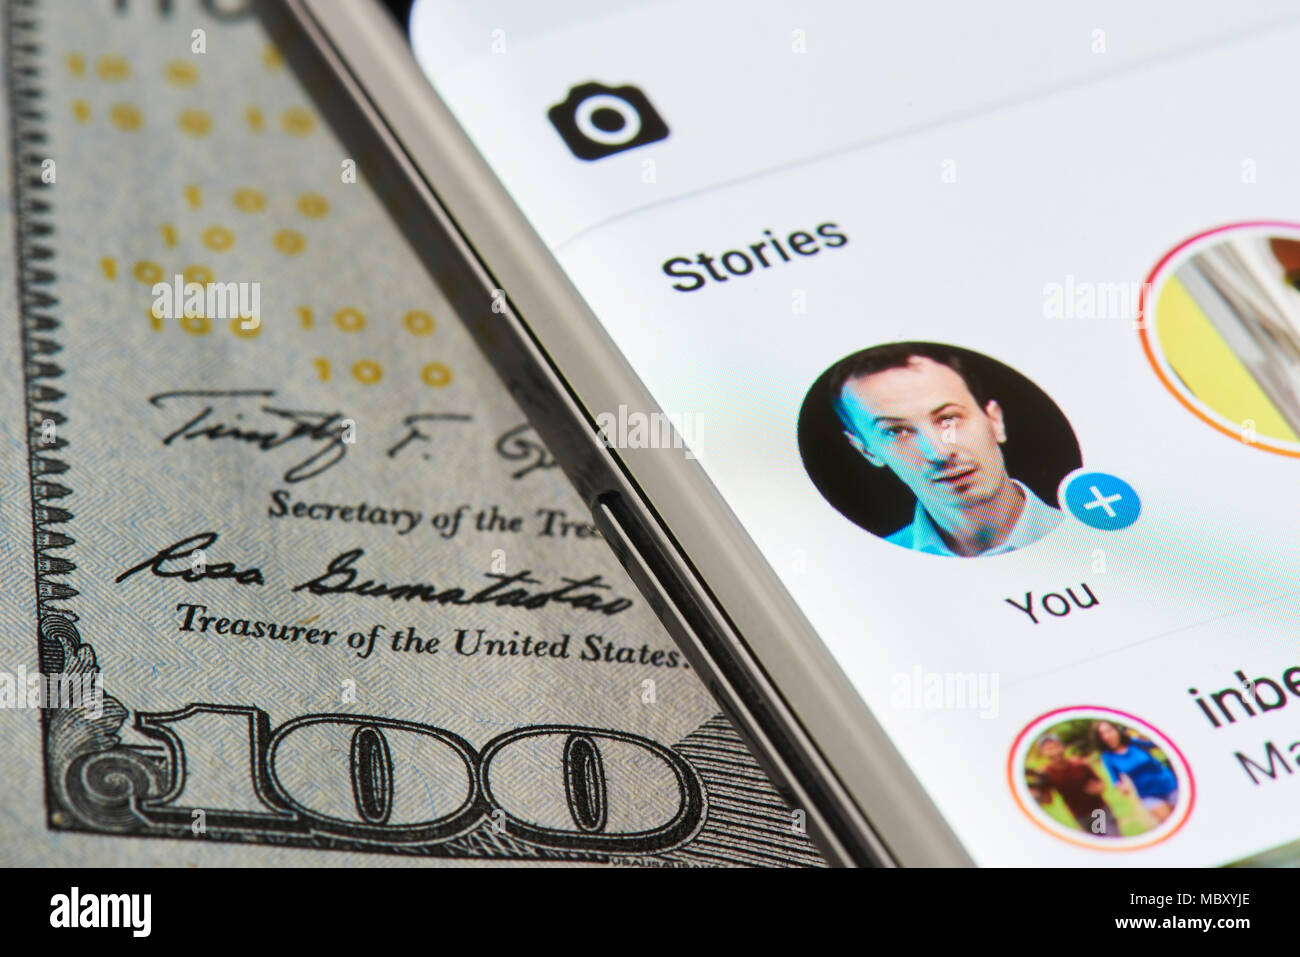 New York, USA - 11 Avril 2018 : histoire Instagram sur smartphone close-up sur fond de devises dollar Banque D'Images